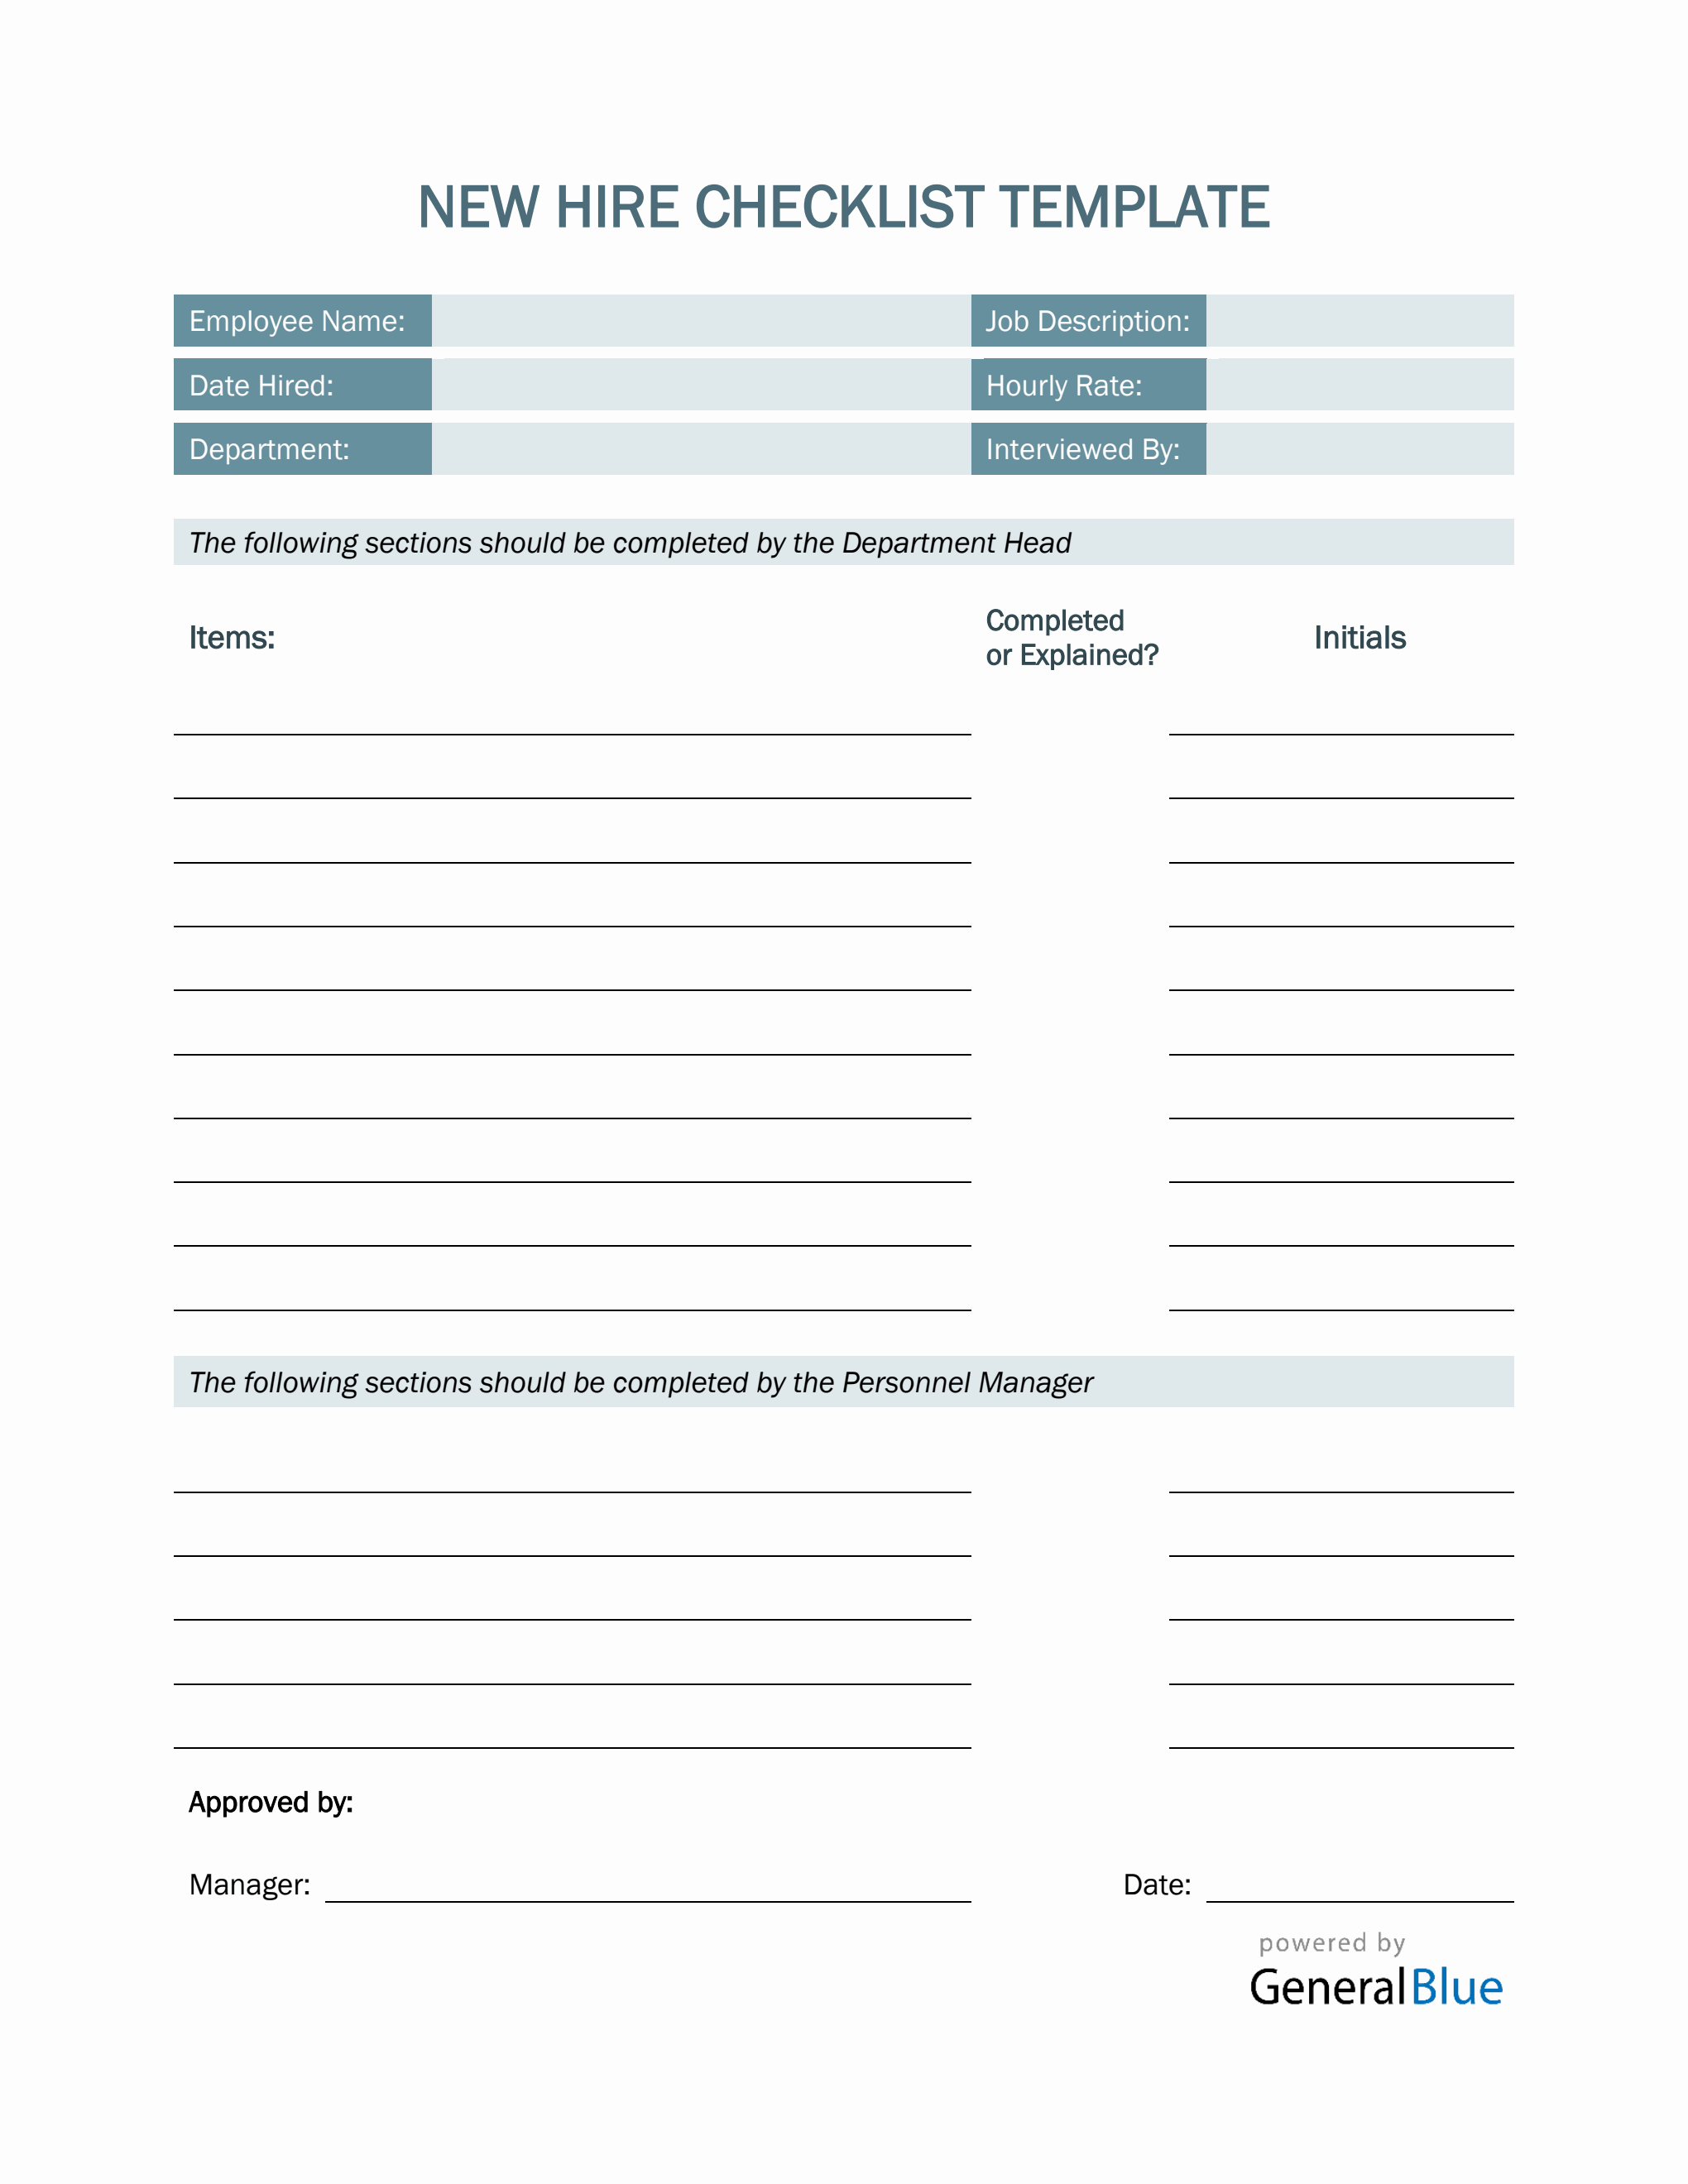 new-hire-checklist-template-in-pdf